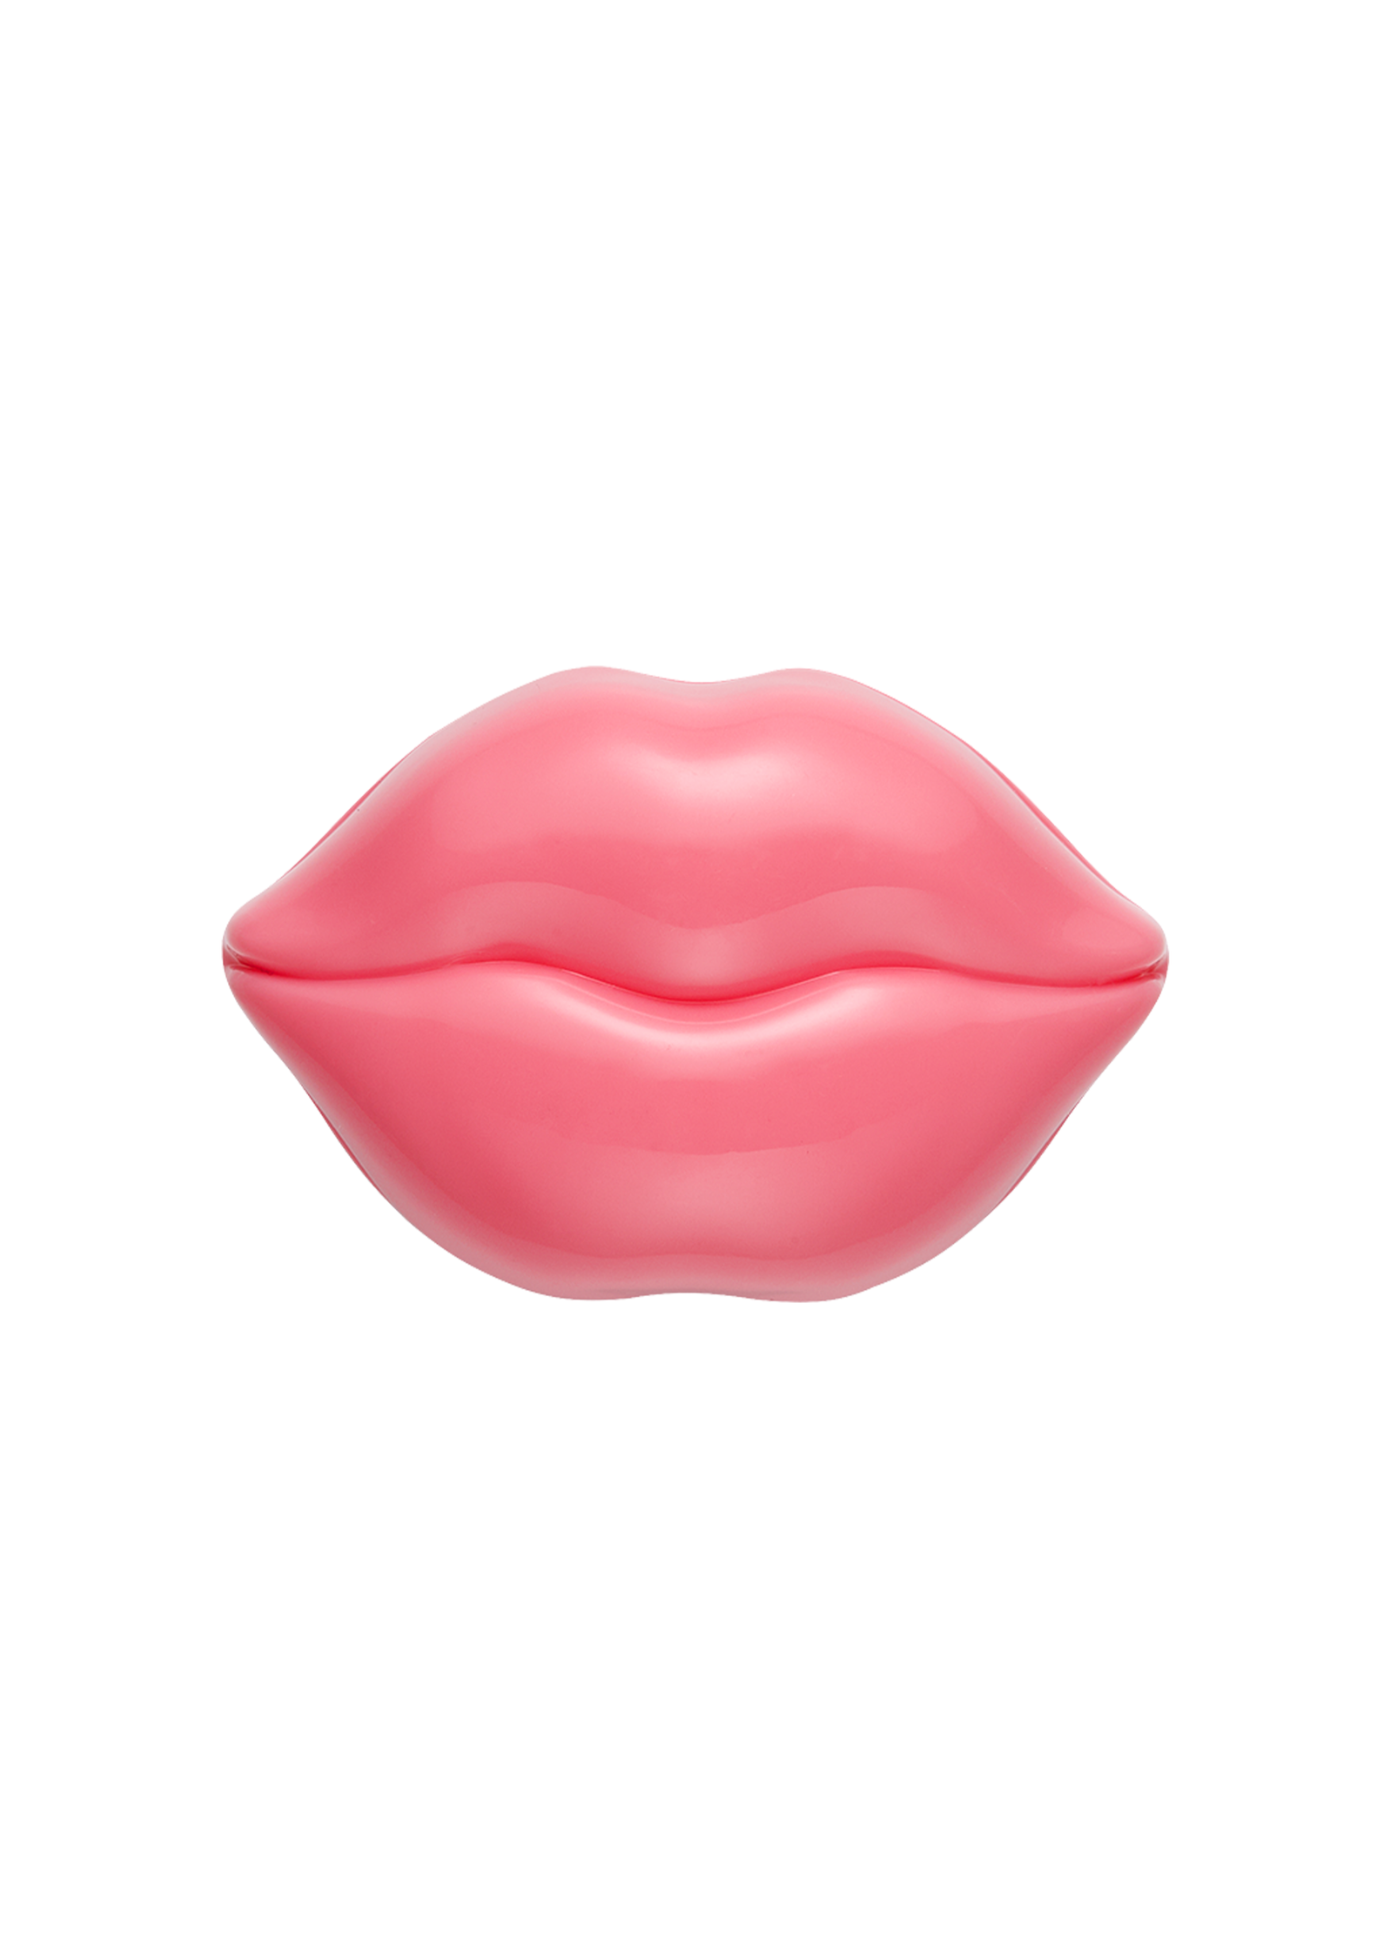 KISS KISS LIP MASK